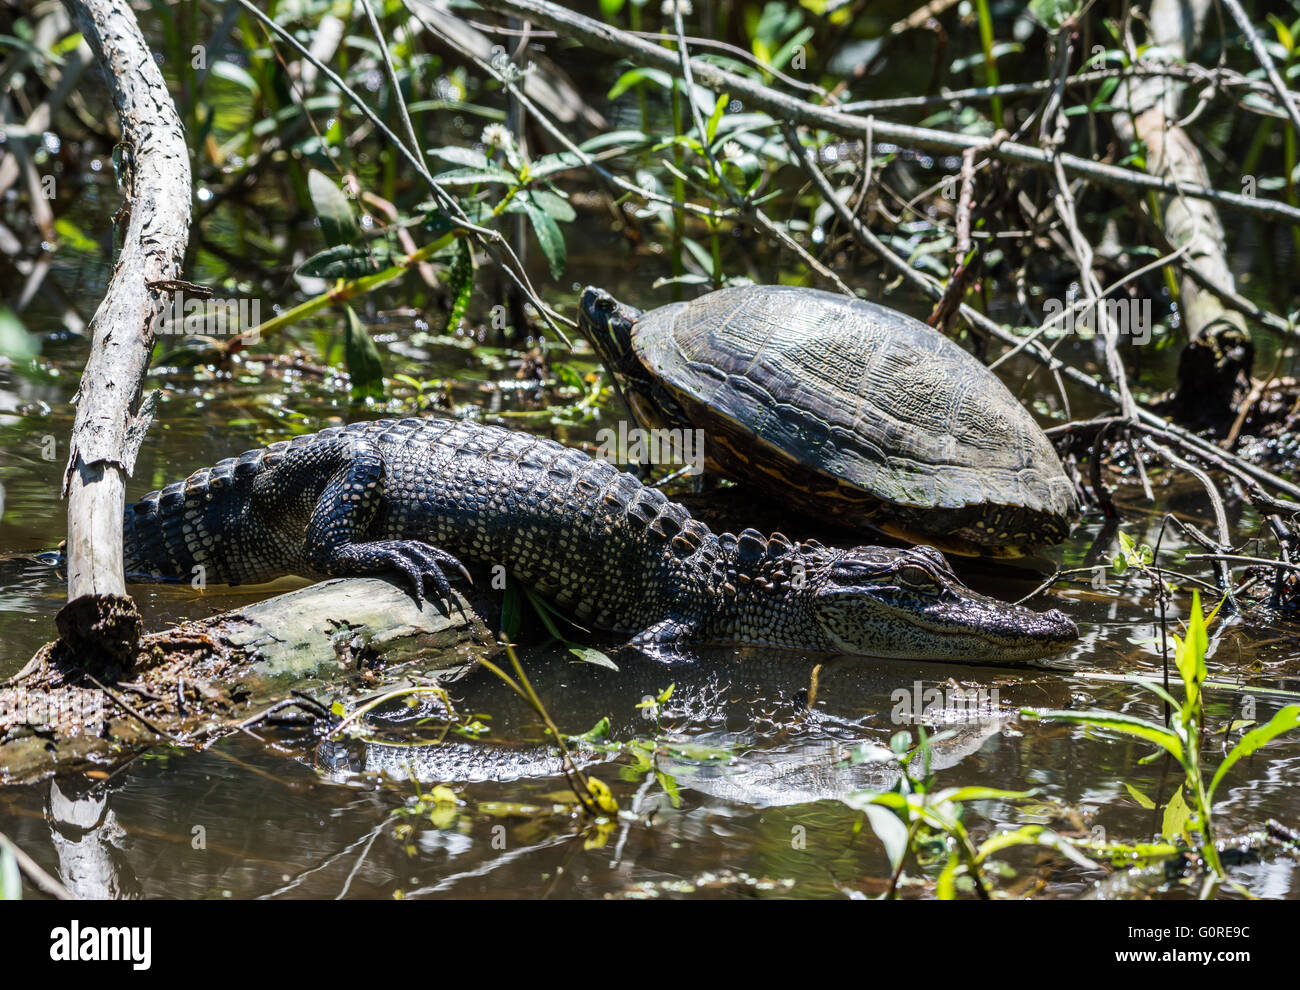 Una coppia di amici del rettile, una tartaruga e un alligatore, a prendere il sole accanto all'altra. Alta Isola, Texas, Stati Uniti d'America. Foto Stock